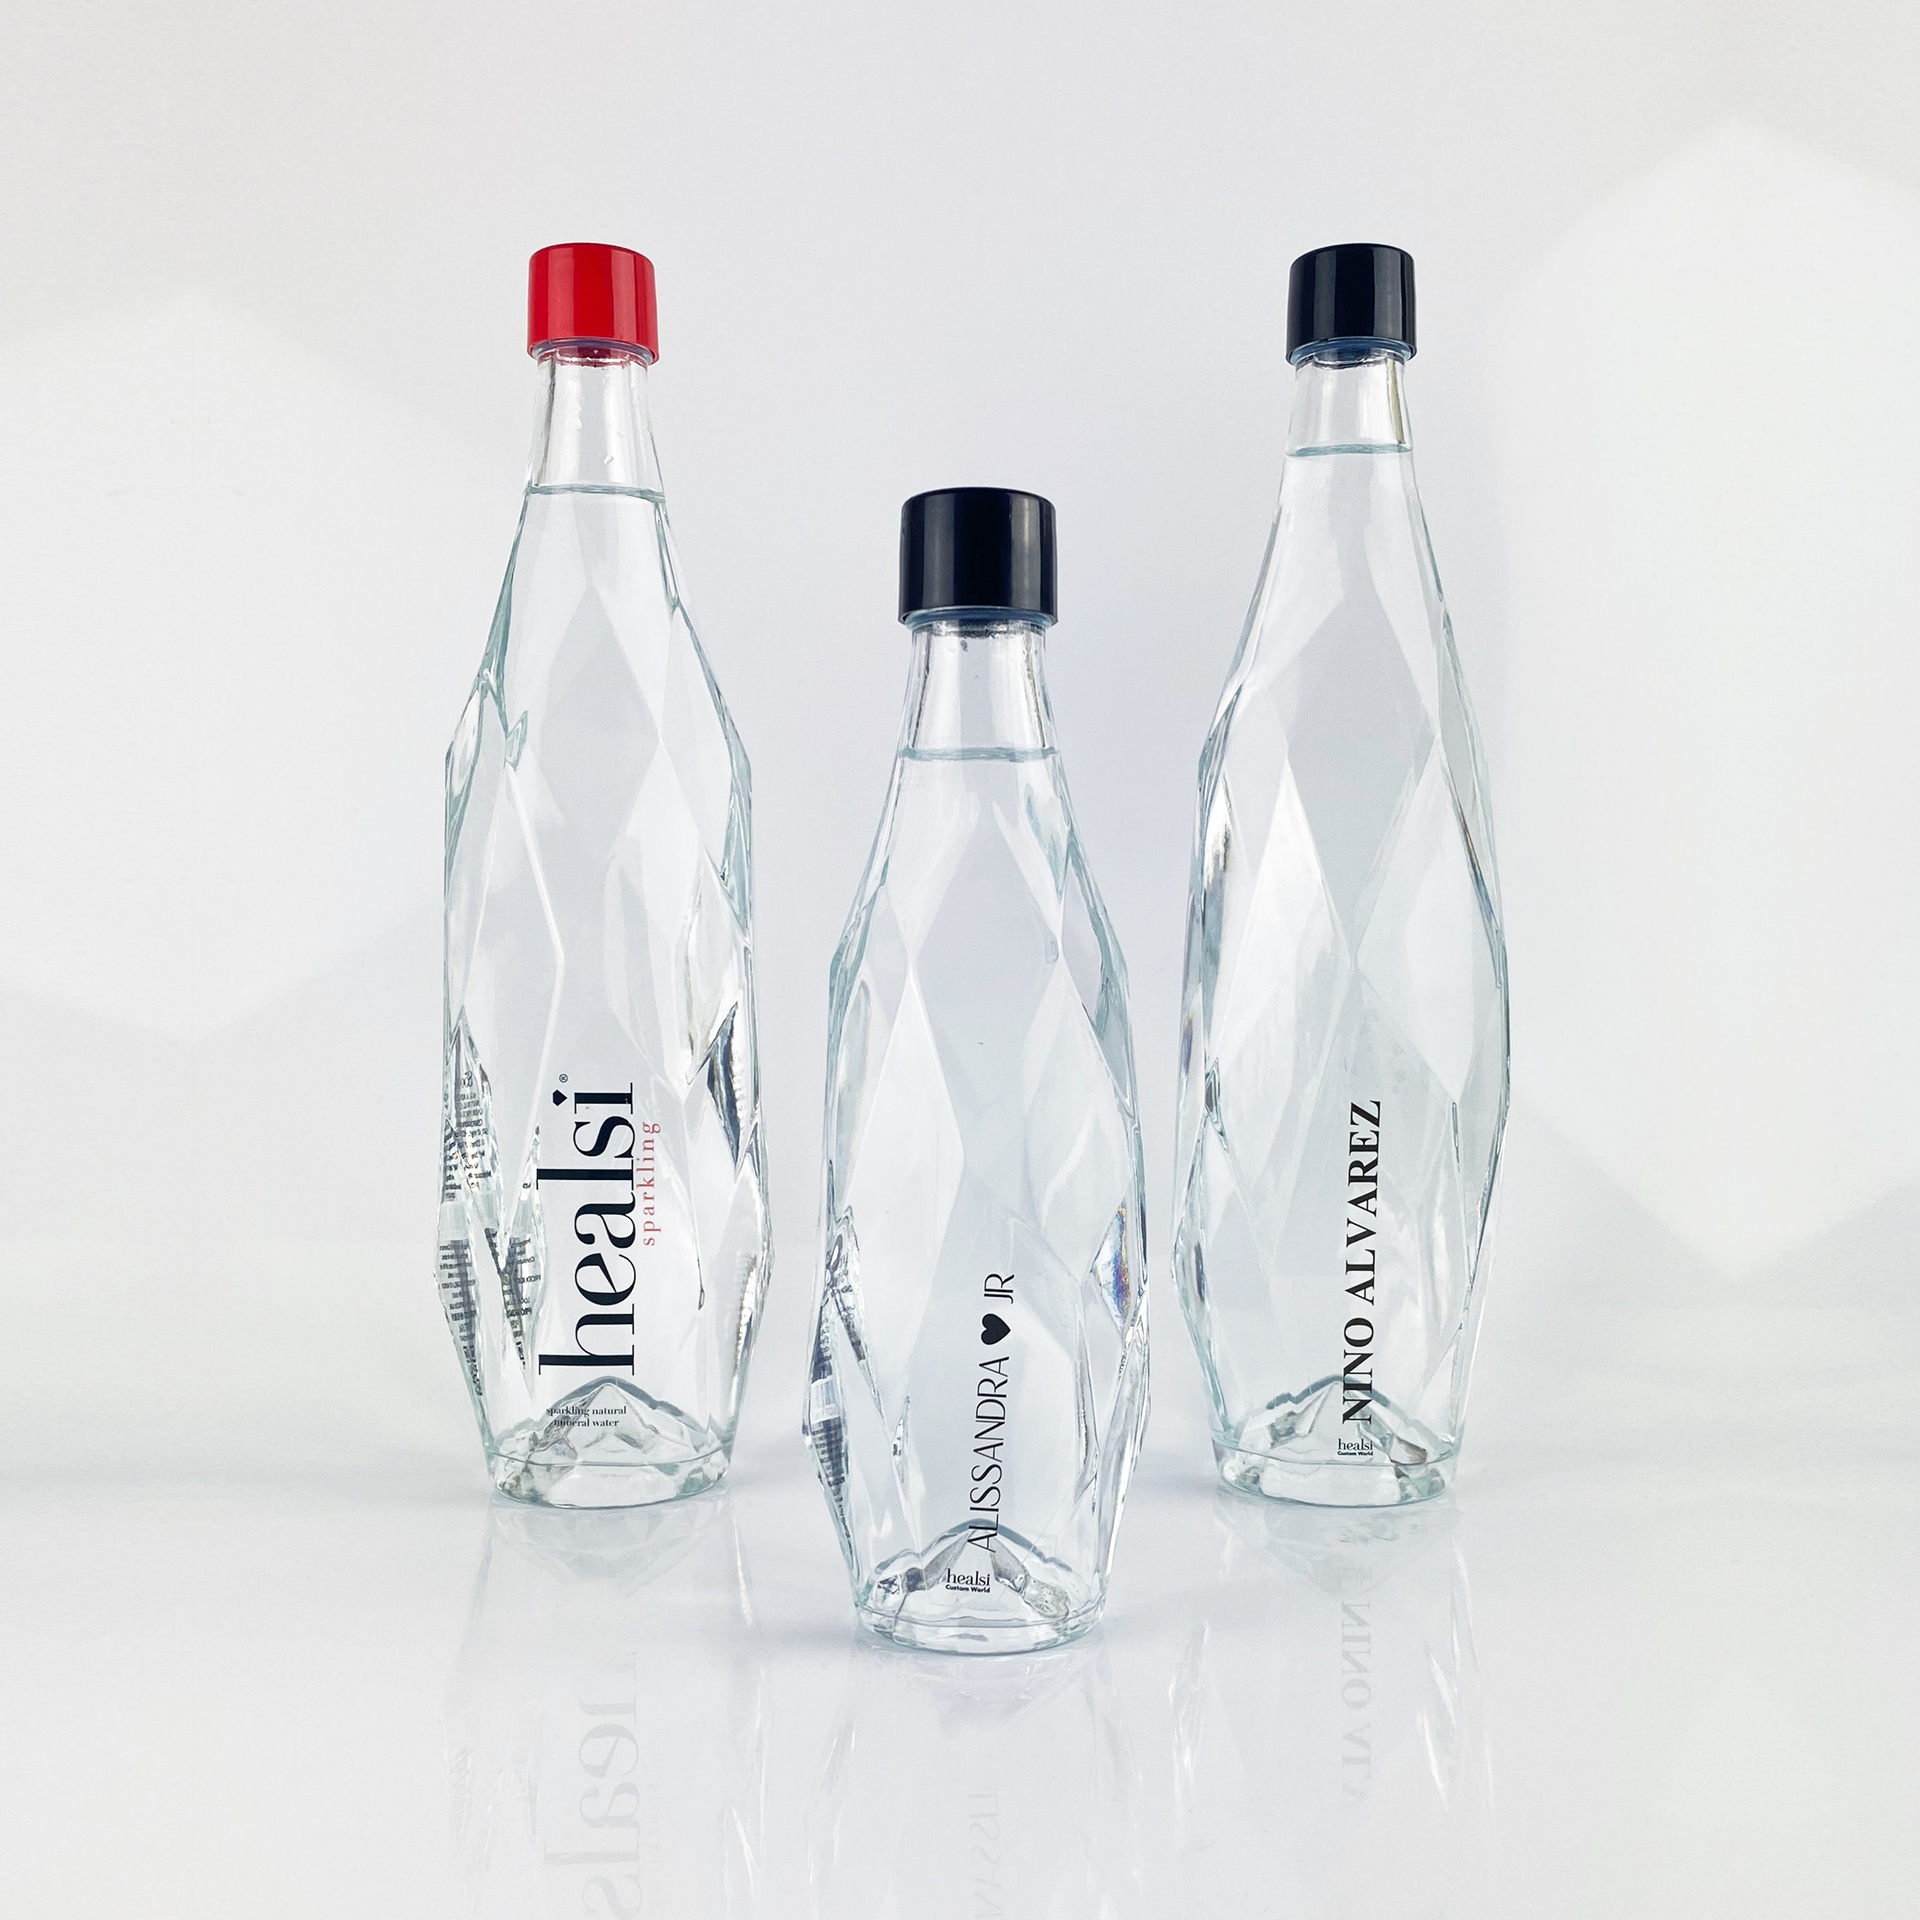 Botellas de Cristal y Vidrio Personalizadas